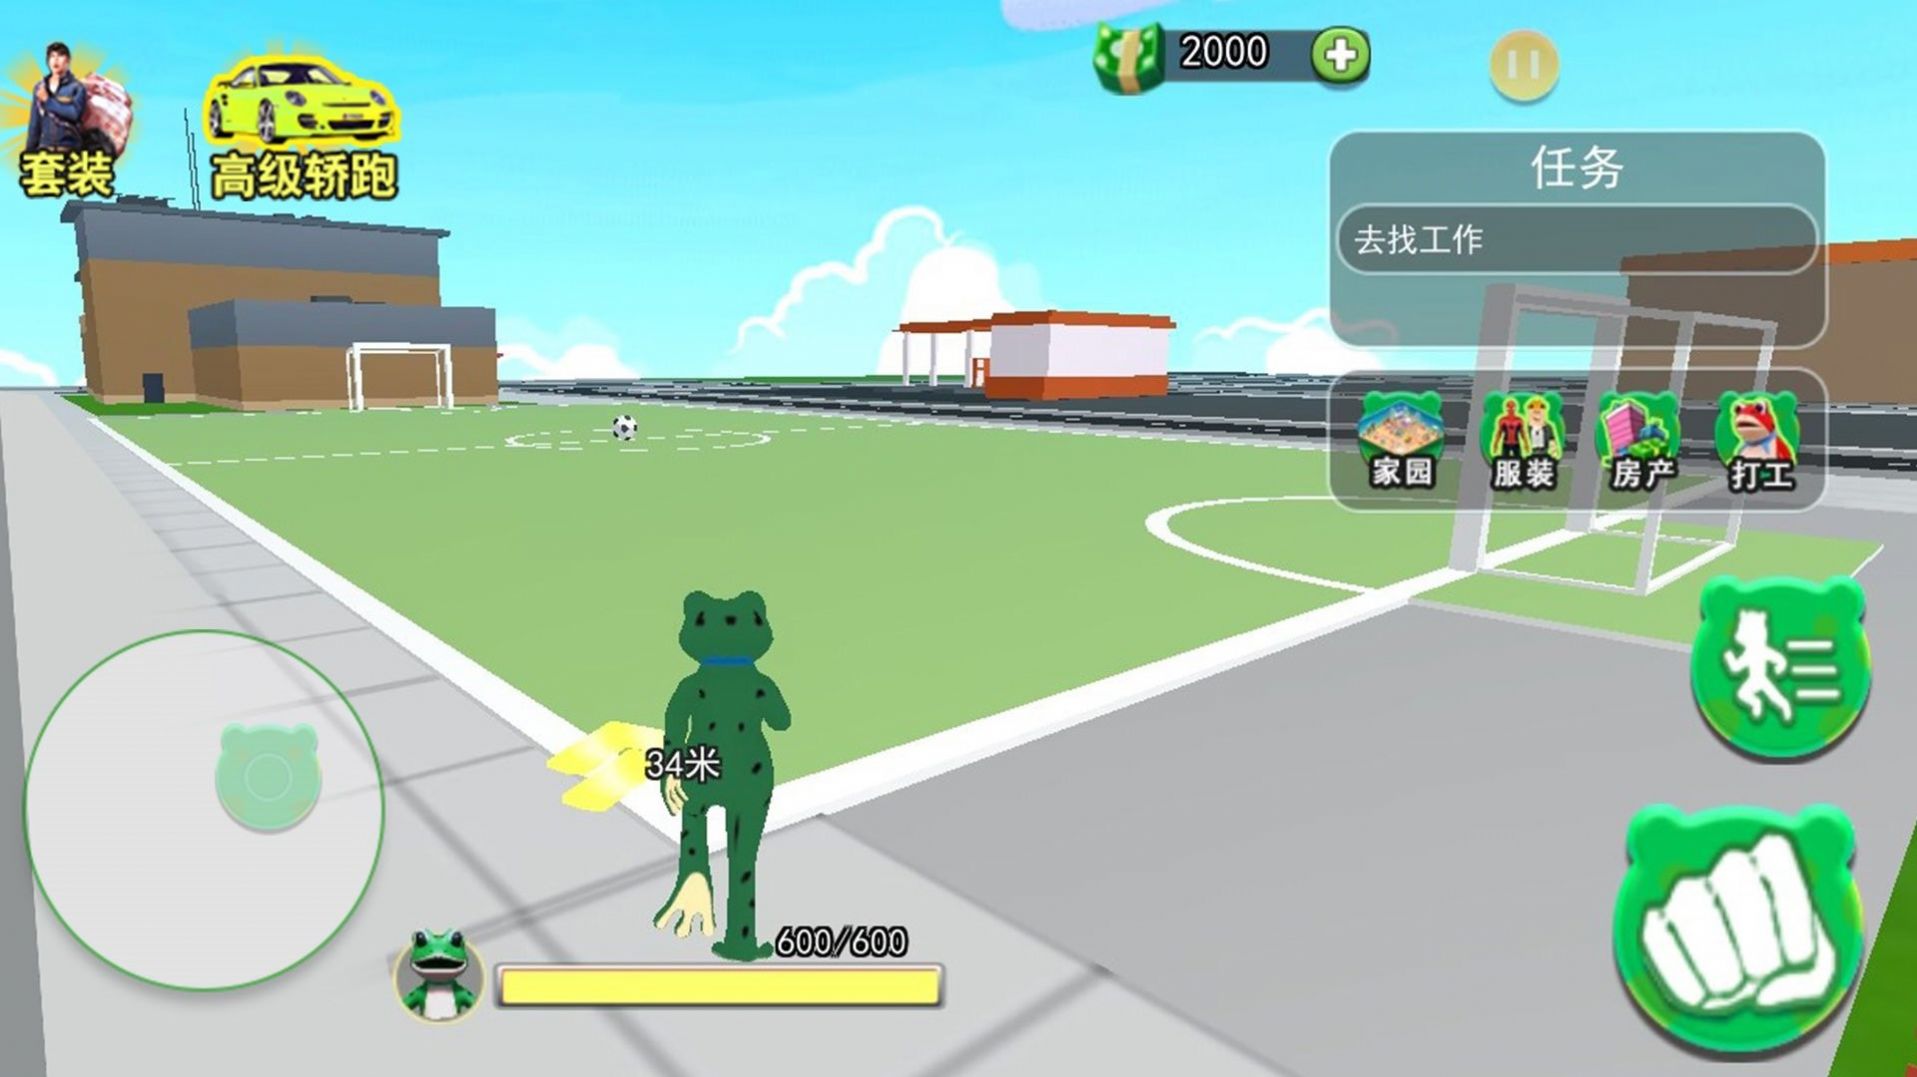 青蛙冒险乐园游戏官方版截图3: